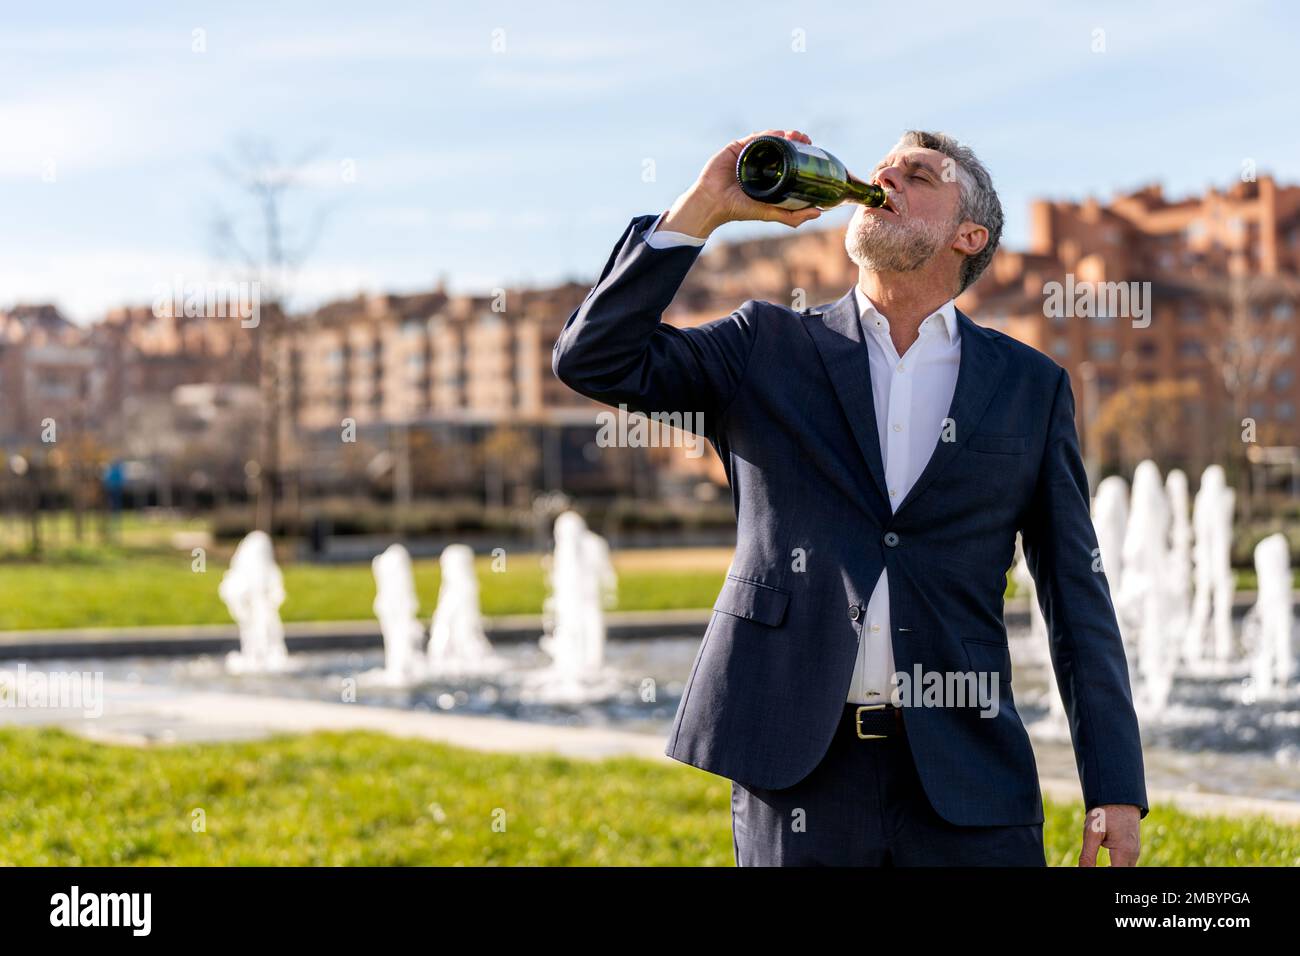 Geschäftsmann mittleren Alters mit Bart im formellen Anzug, der Champagner aus einer Flasche trinkt, während er auf der Straße gegen den Brunnen steht Stockfoto